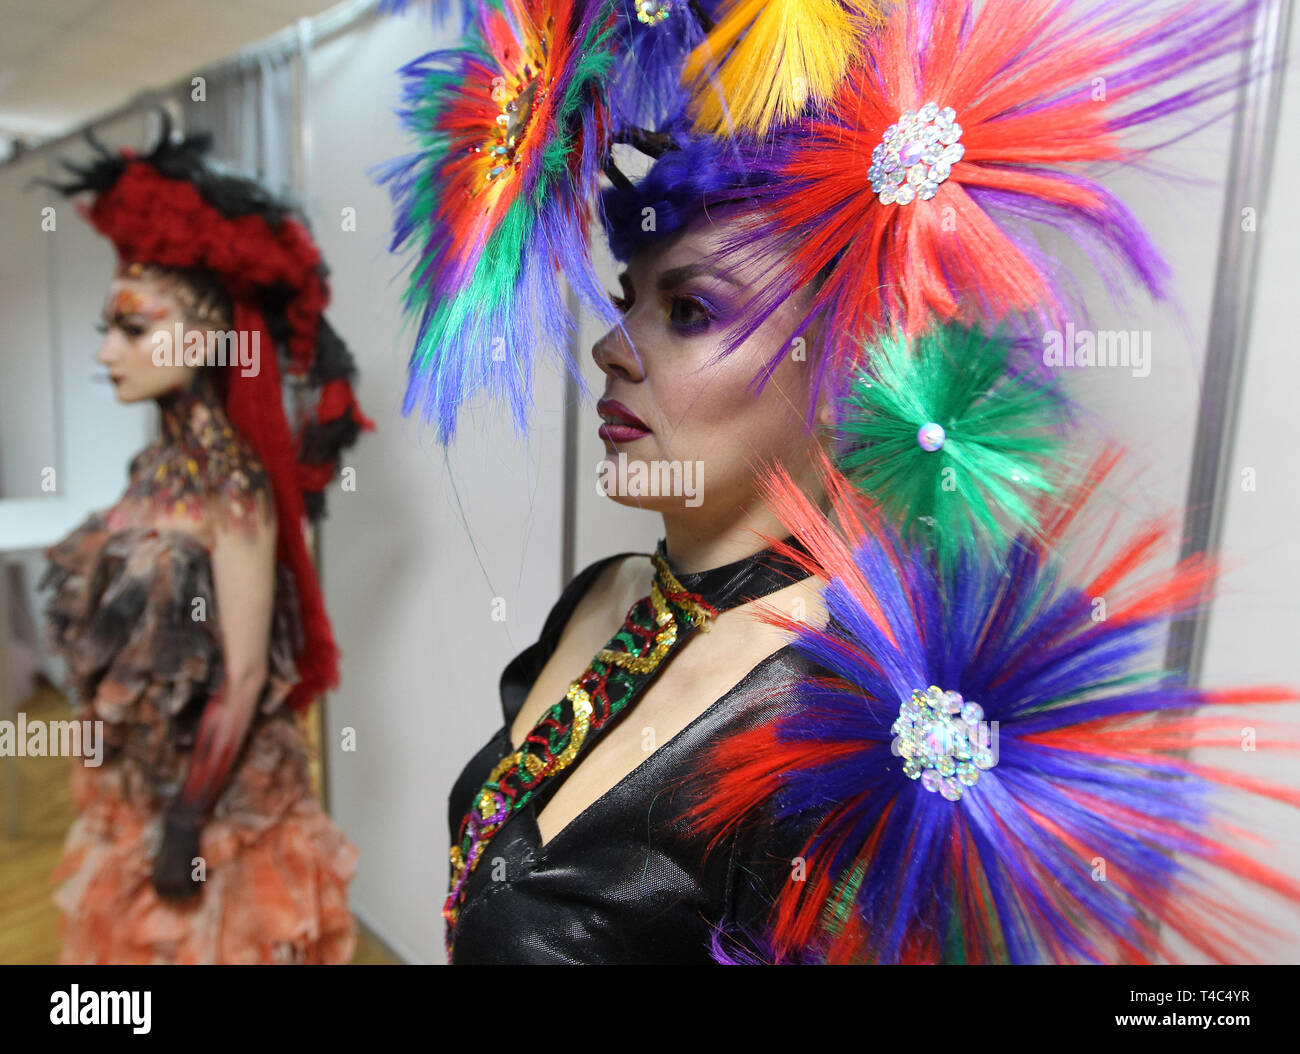 Modelle gesehen werden präsentiert während der jährlichen Internationalen friseure Festival, Crystal Angel in Kiew. Die Friseur-und Make-up-Künstler in der Internationalen Festival friseur Kunst, Mode und Design Crystal Angel in Kiew teilgenommen. Stockfoto